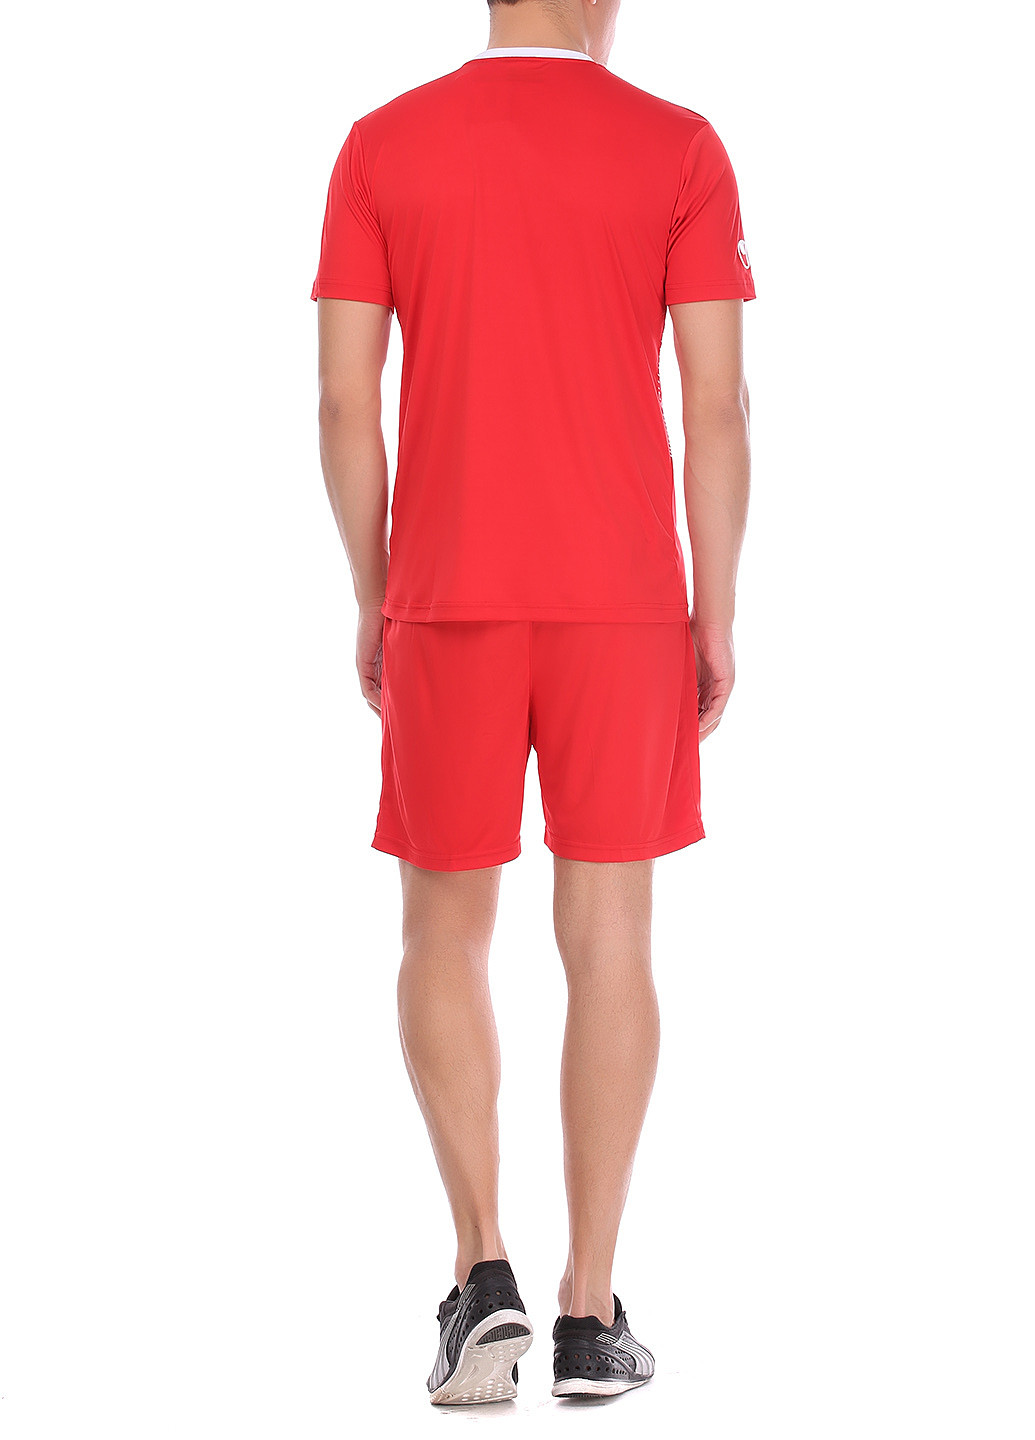 Красный демисезонный костюм (футболка, шорты) с коротким рукавом Uhlsport